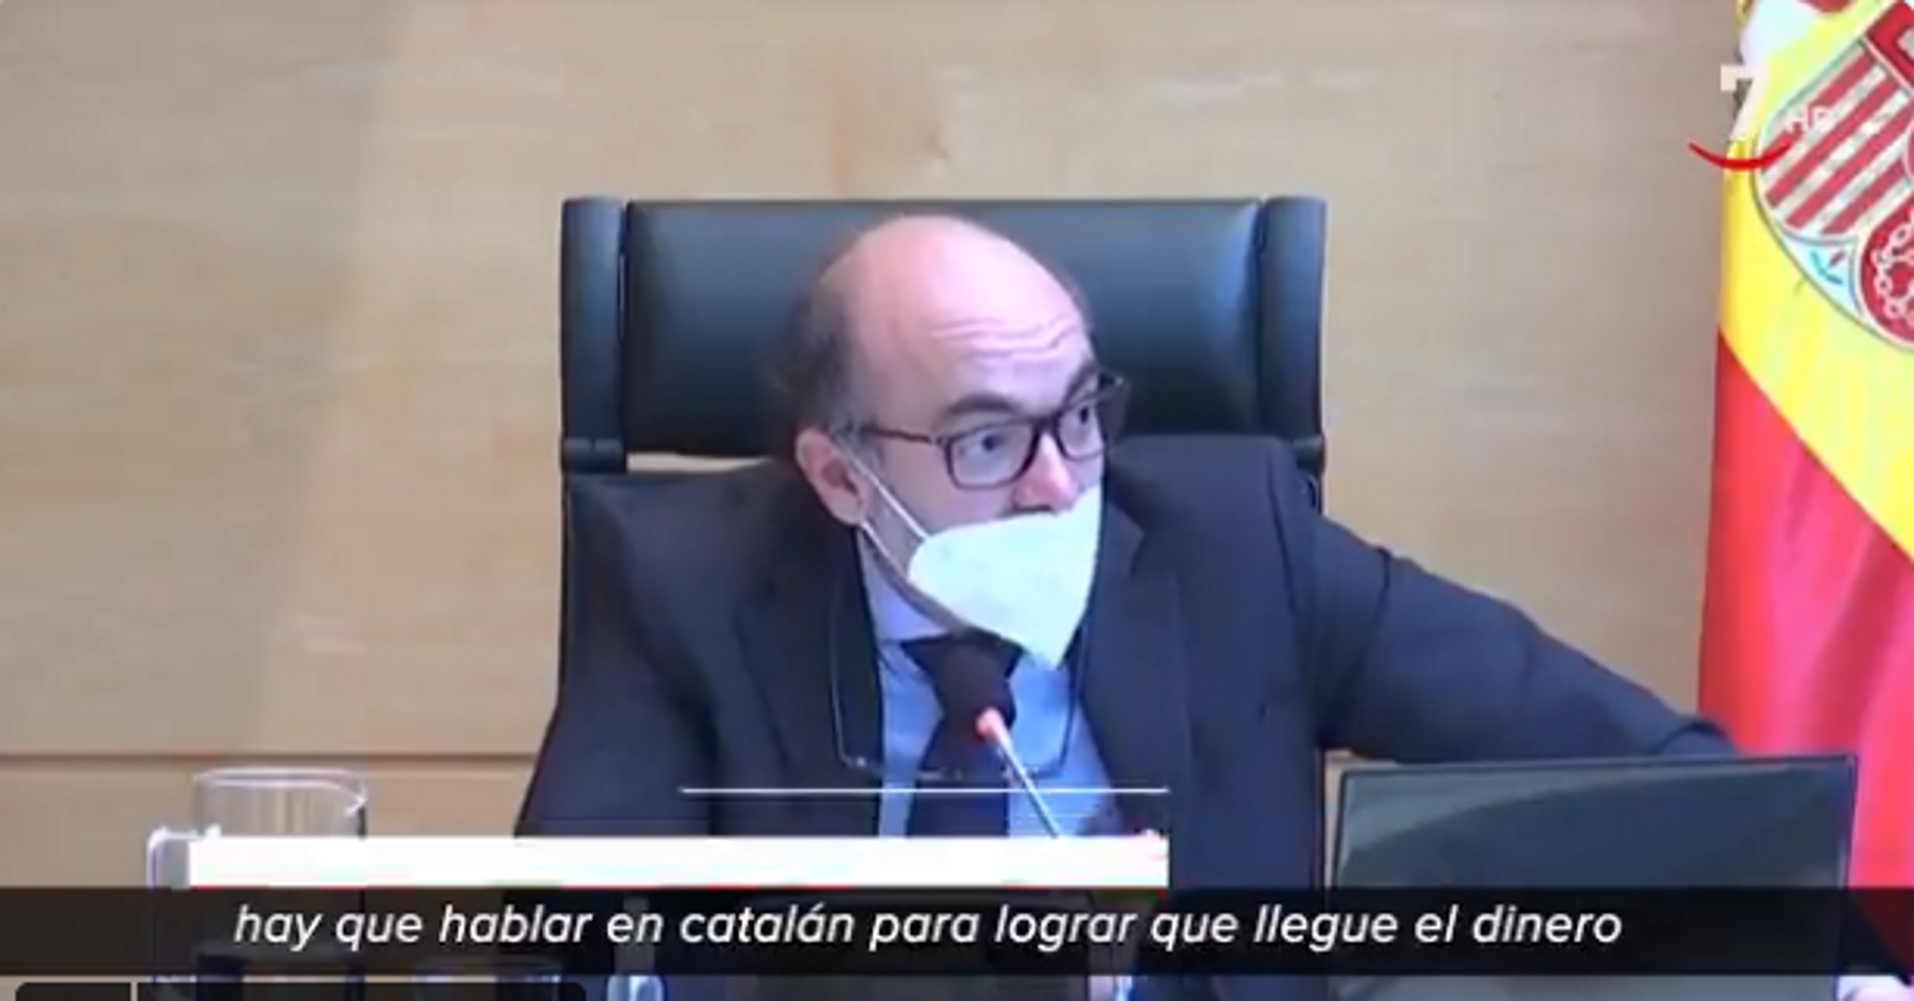 El consejero de Cultura de Castilla y León habla catalán (para reclamar dinero)